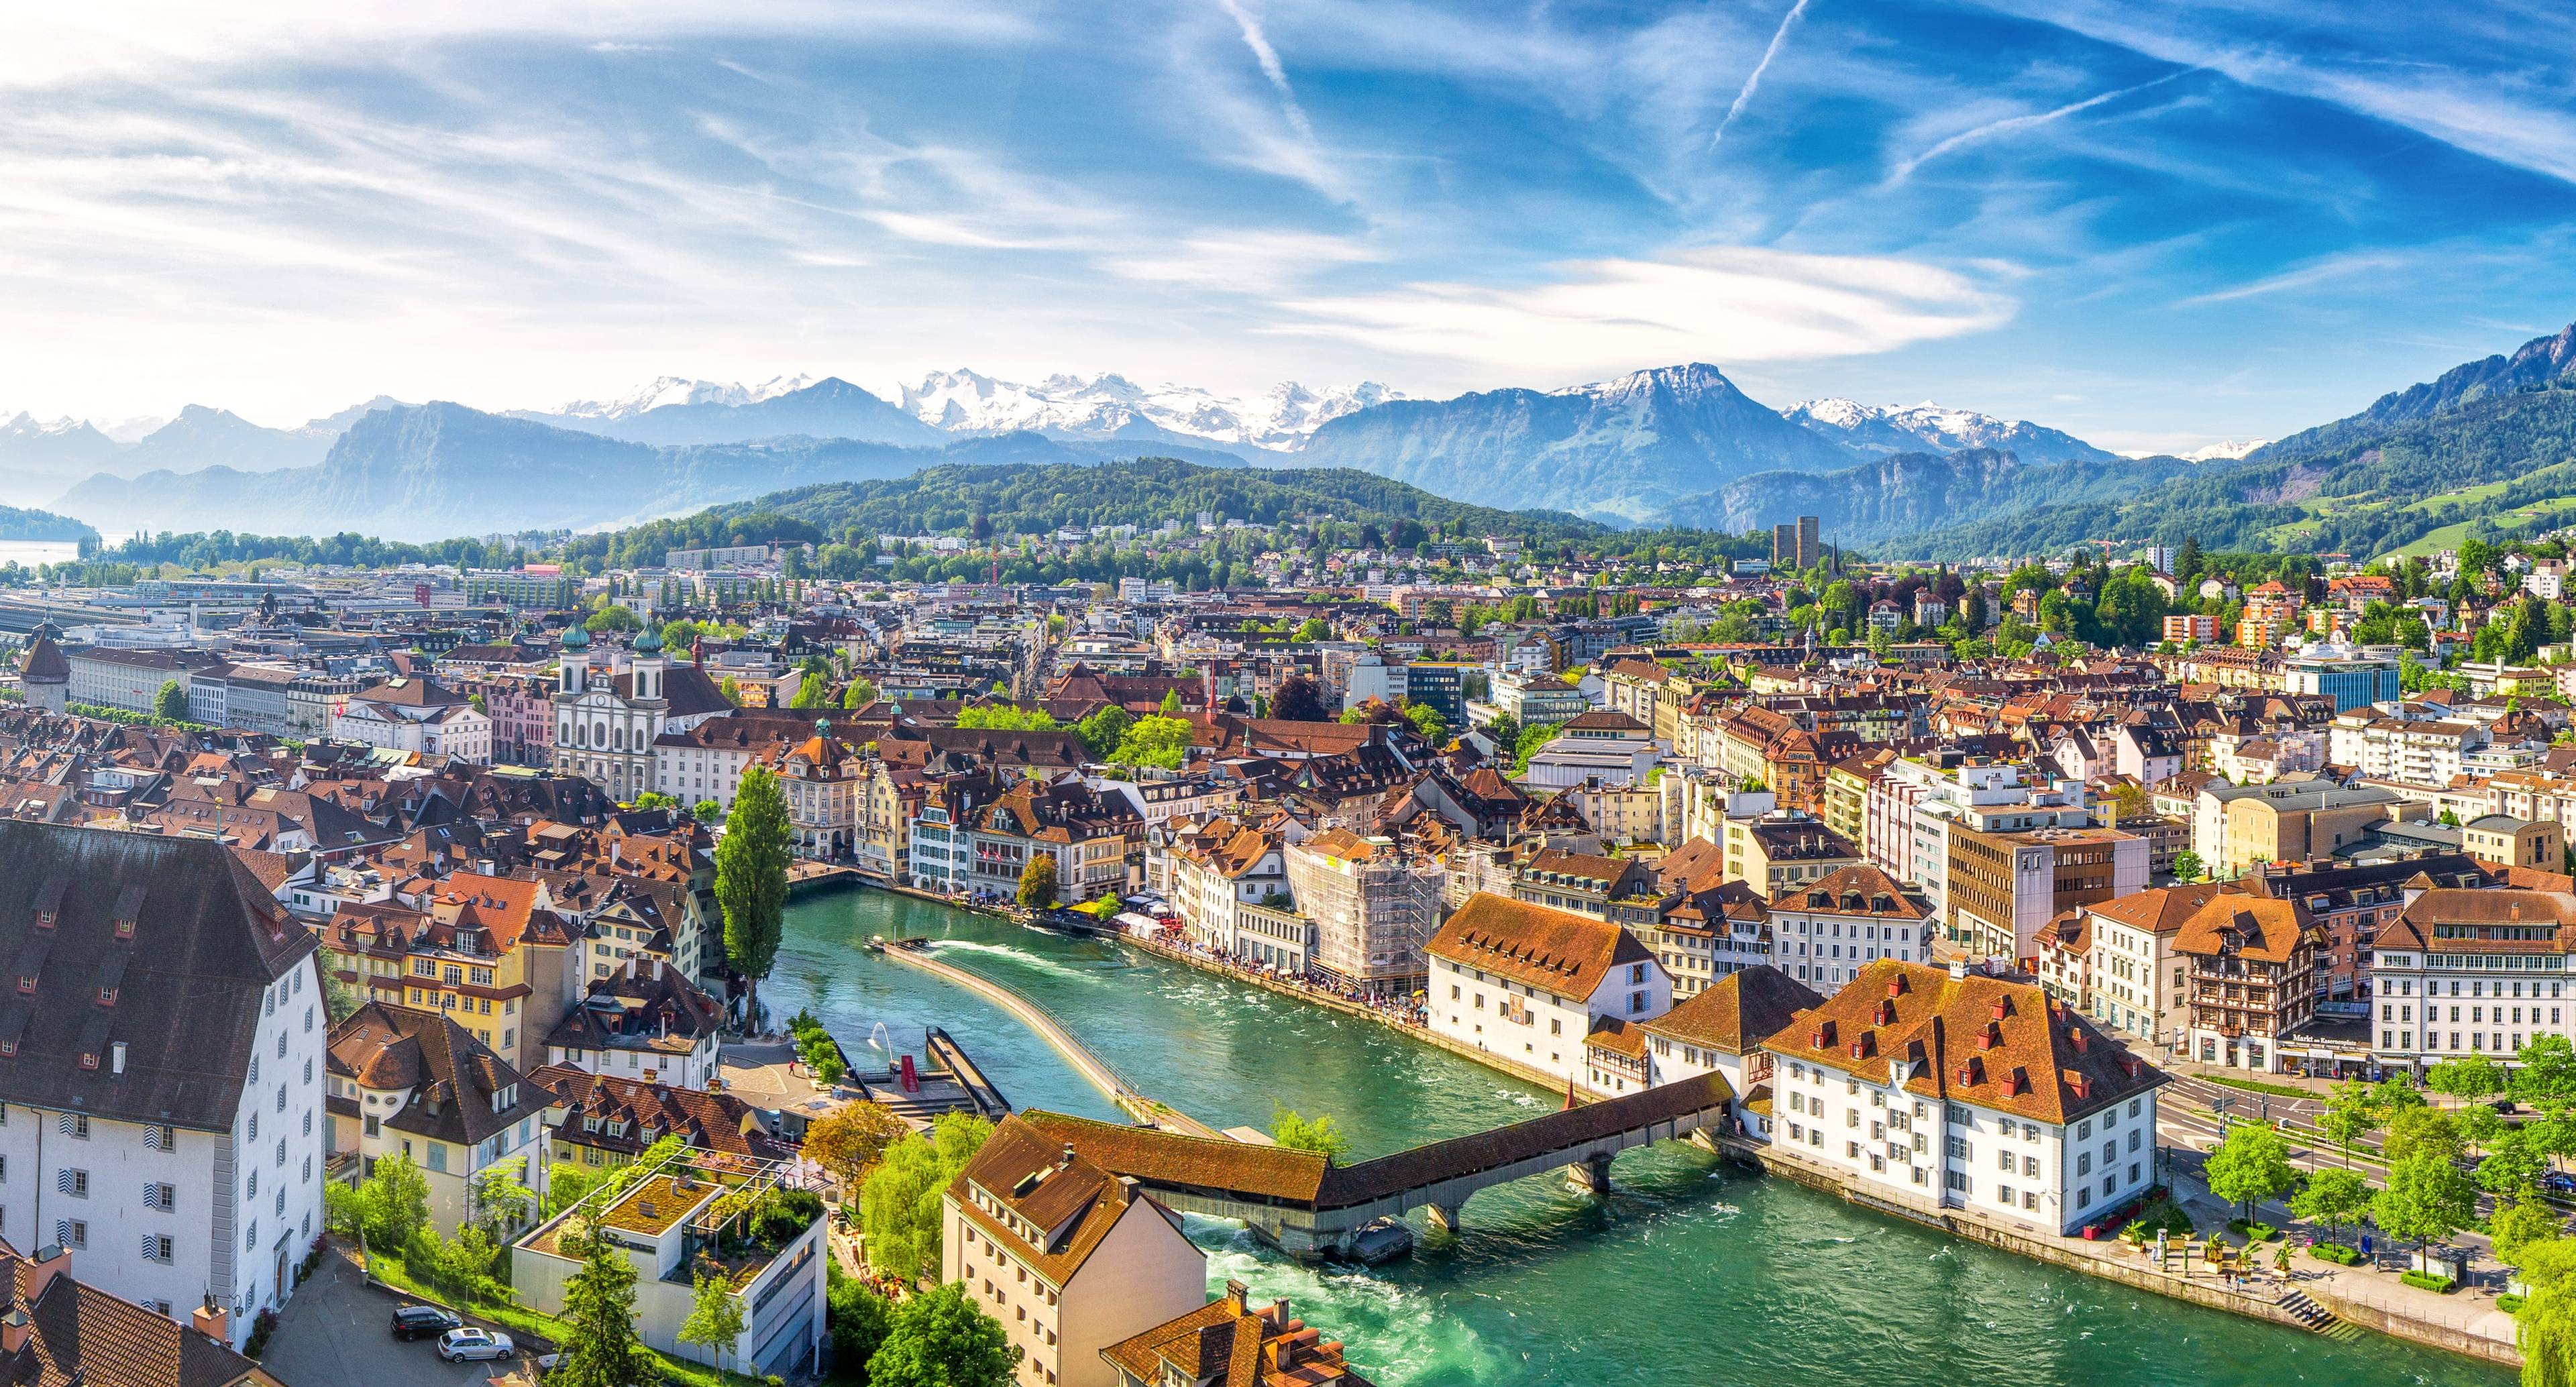 Passi e panorami: Dal Lago di Como a Lucerna